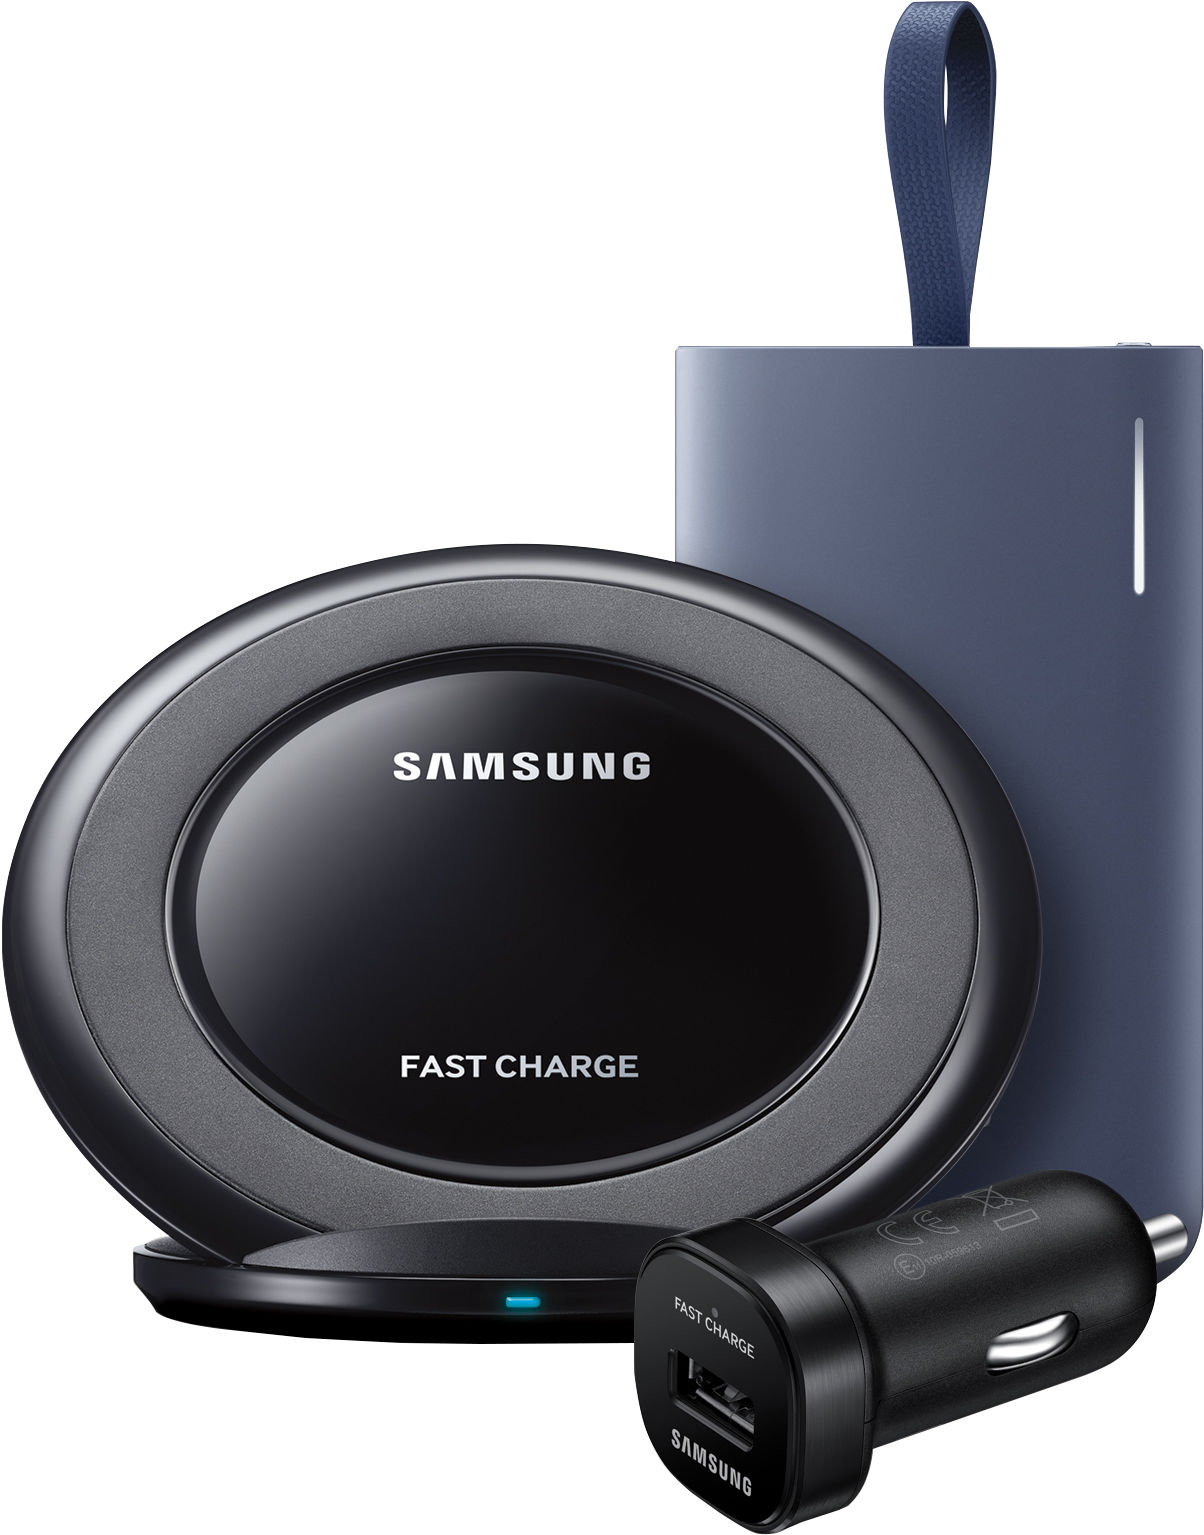 Фаст чардж. Samsung fast charge. Самсунг fast charge. Wireless Charging Samsung Case. Stand Samsung.